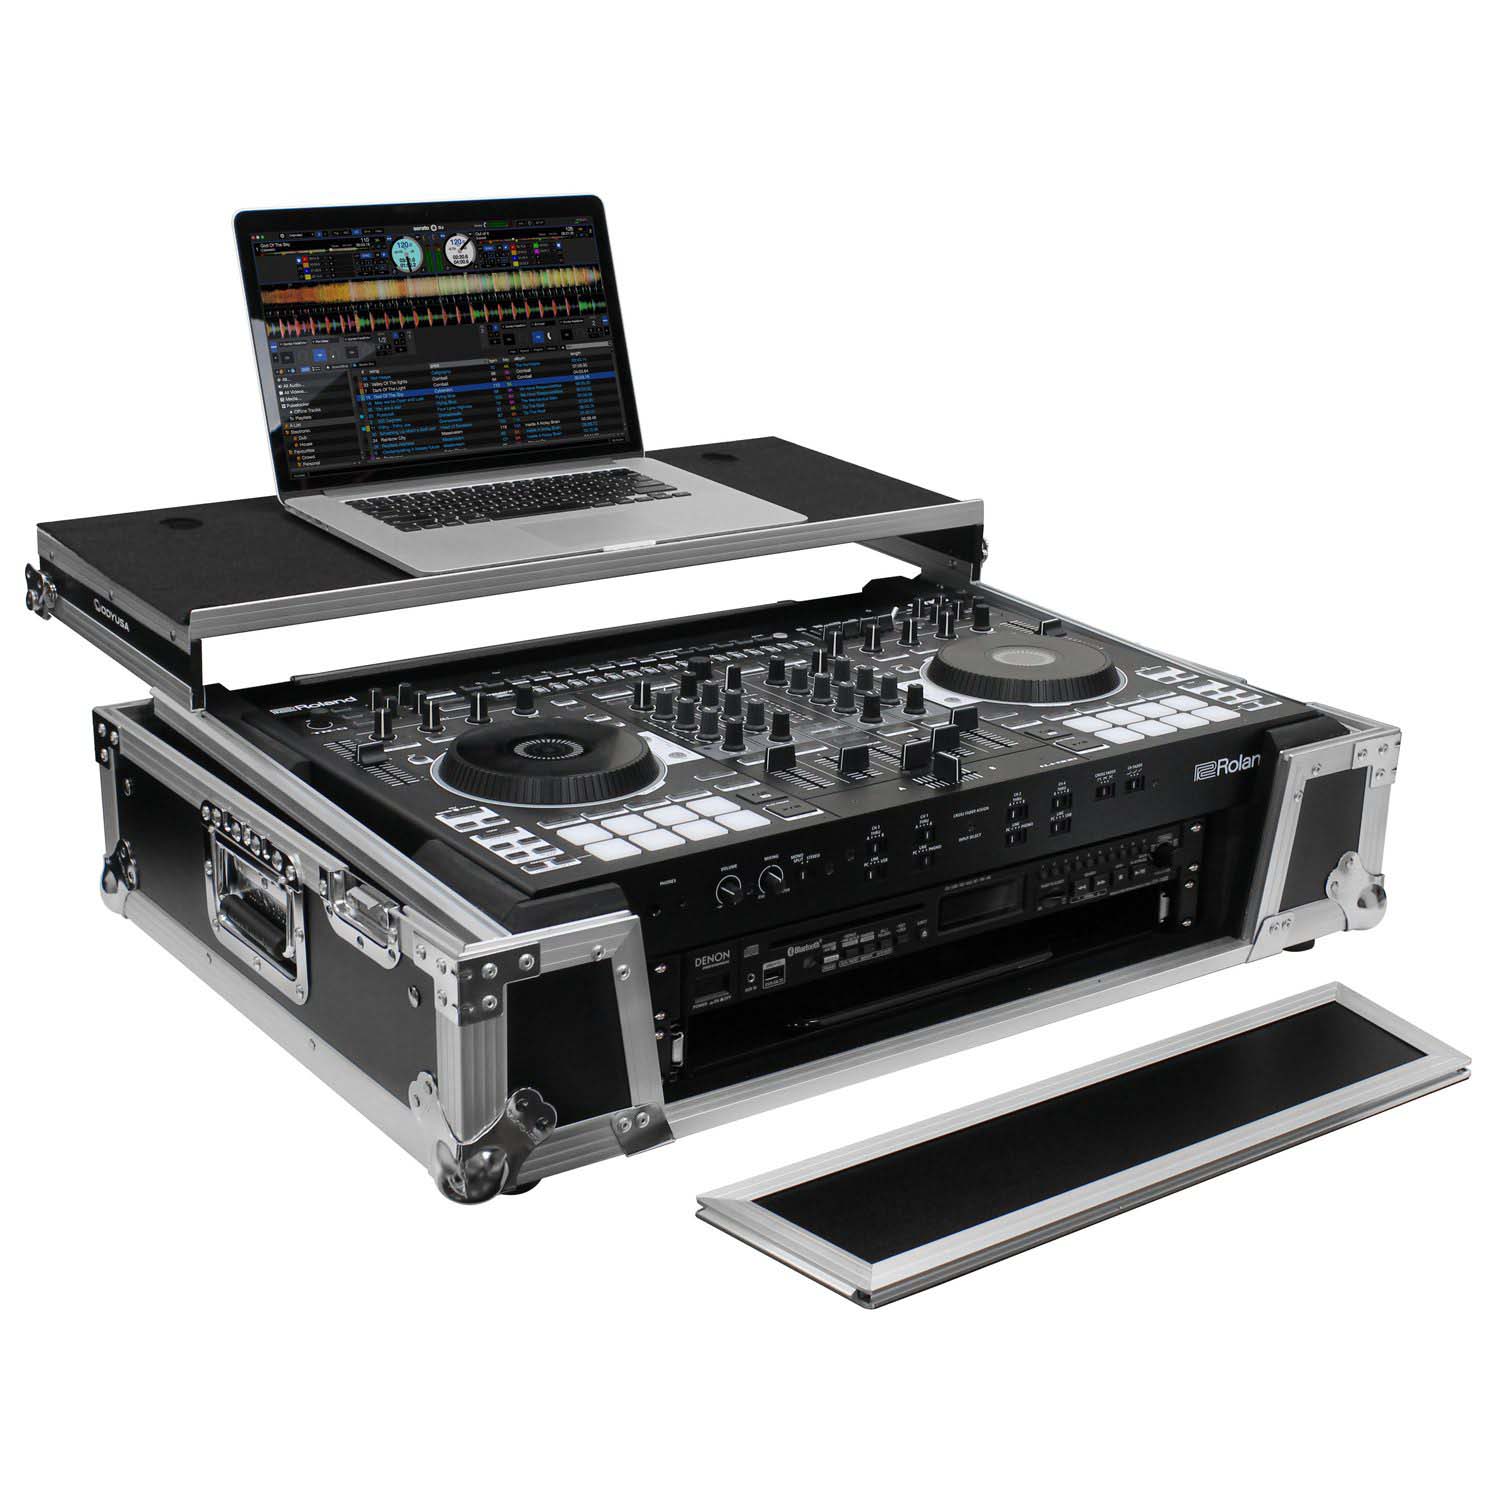 Odyssey FZGSDJ808W2 Flight Case For Roland DJ-808 / Denon MC7000 With 2U Rack Space and Glide Platform - Hollywood DJ